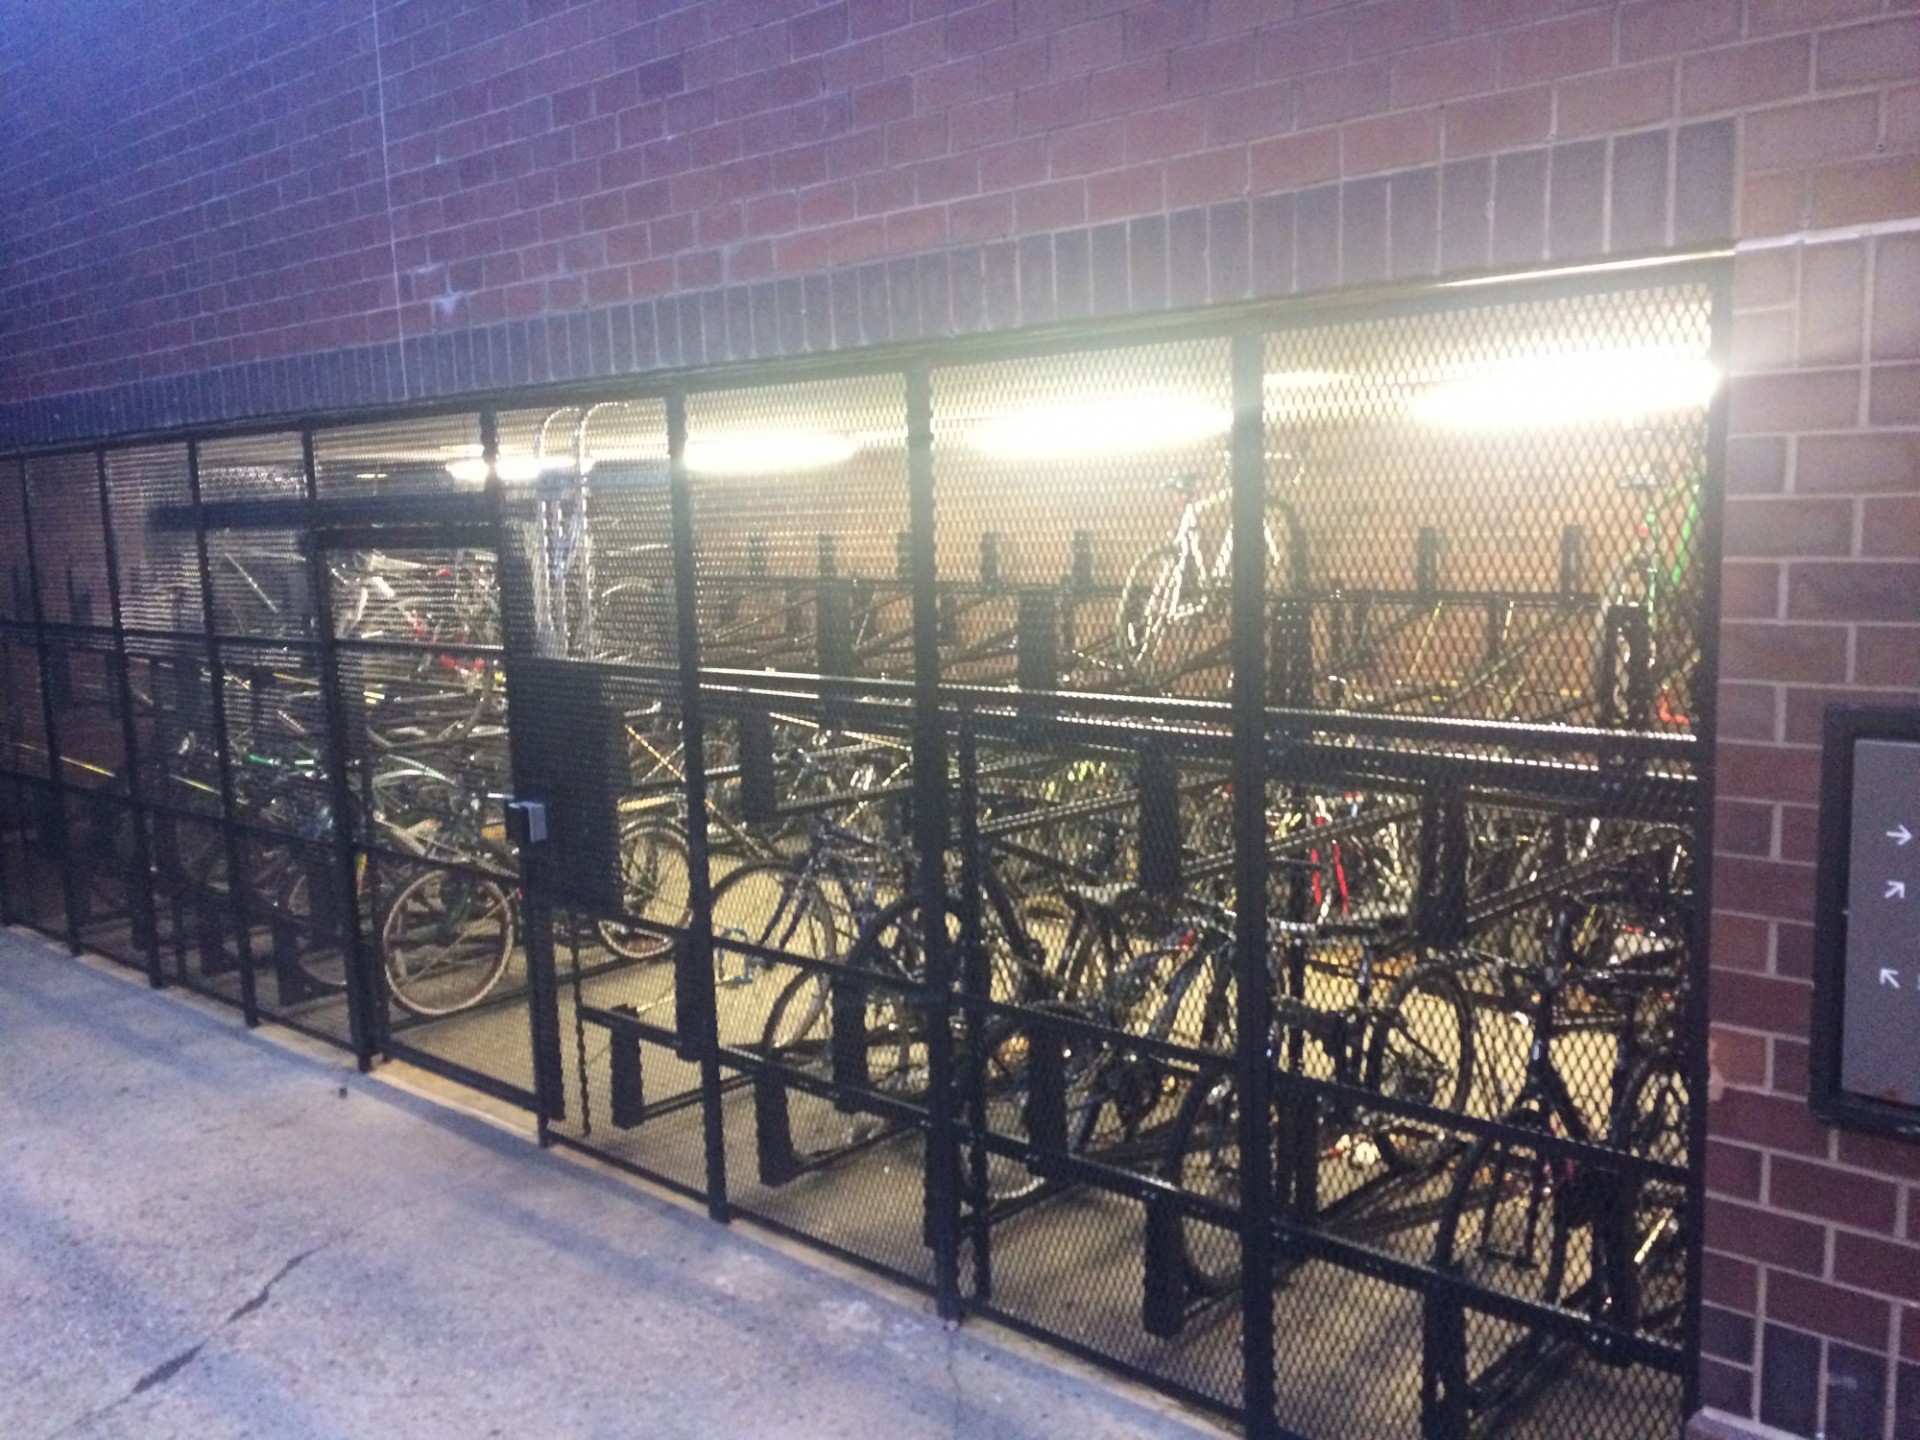 Bike parking enclosure on the Morningside Campus